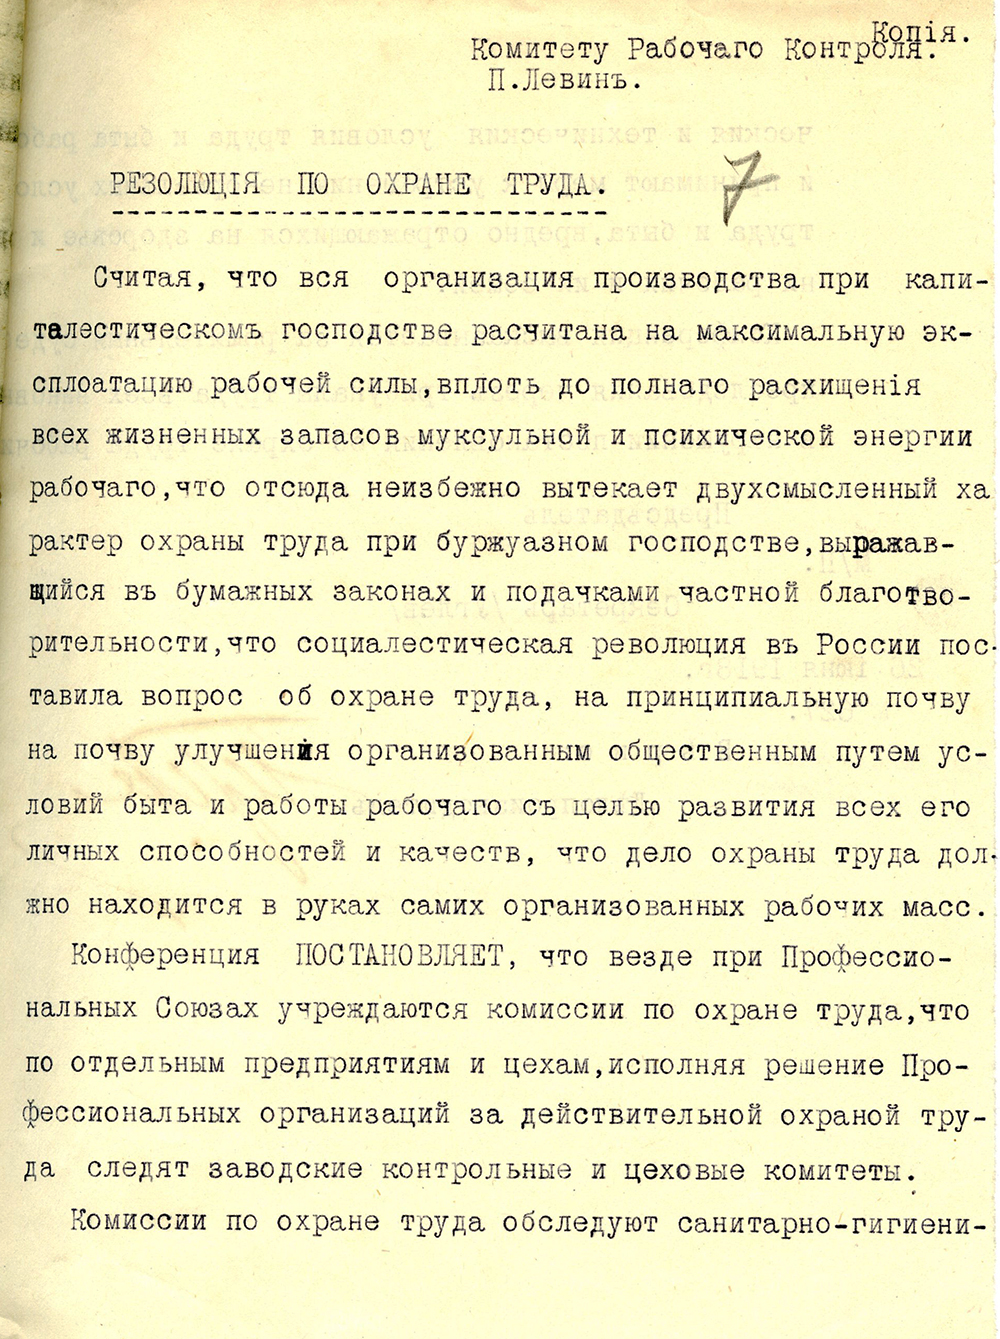 Резолюция по охране труда отправленная Комитету Рабочего Контроля В-Туринского завода, 26 июня 1918 года. (НТГИА. Ф.66.Оп.1.Д.90.Л.7)